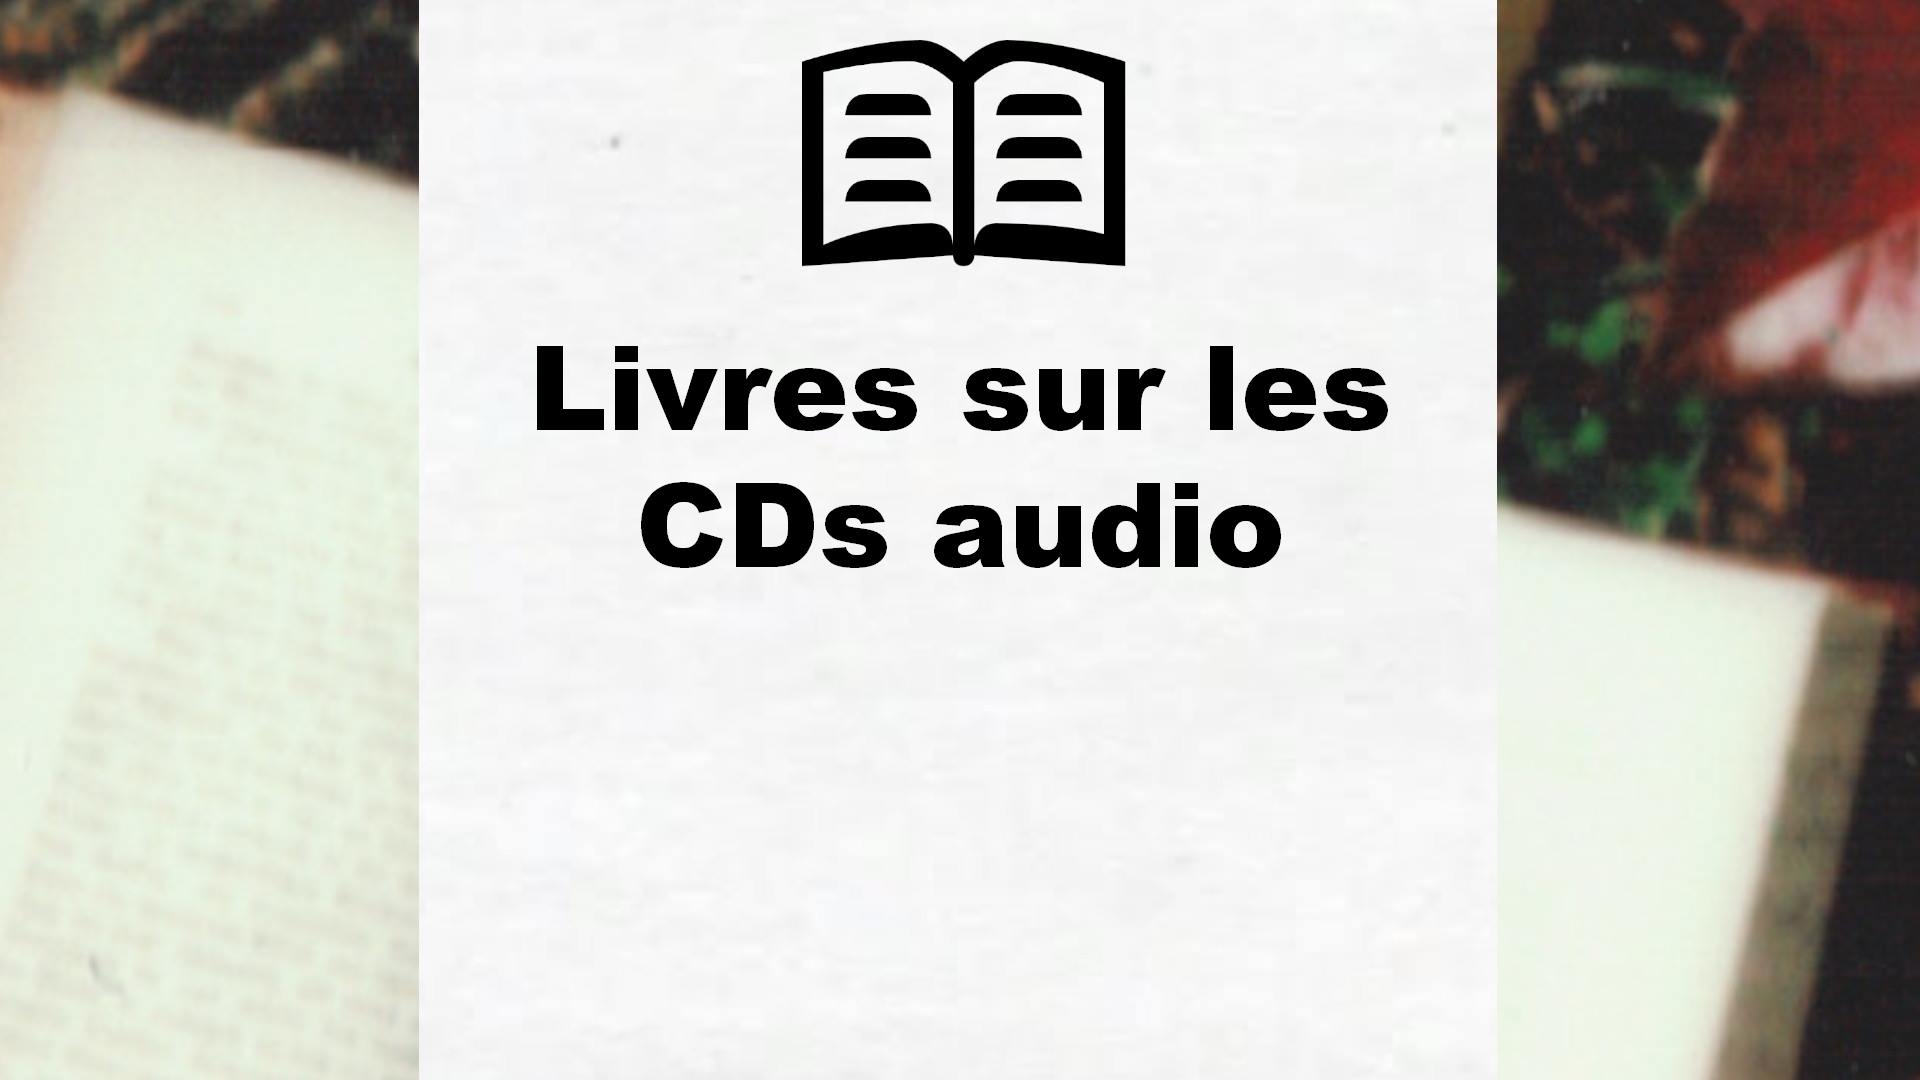 Livres sur les CDs audio